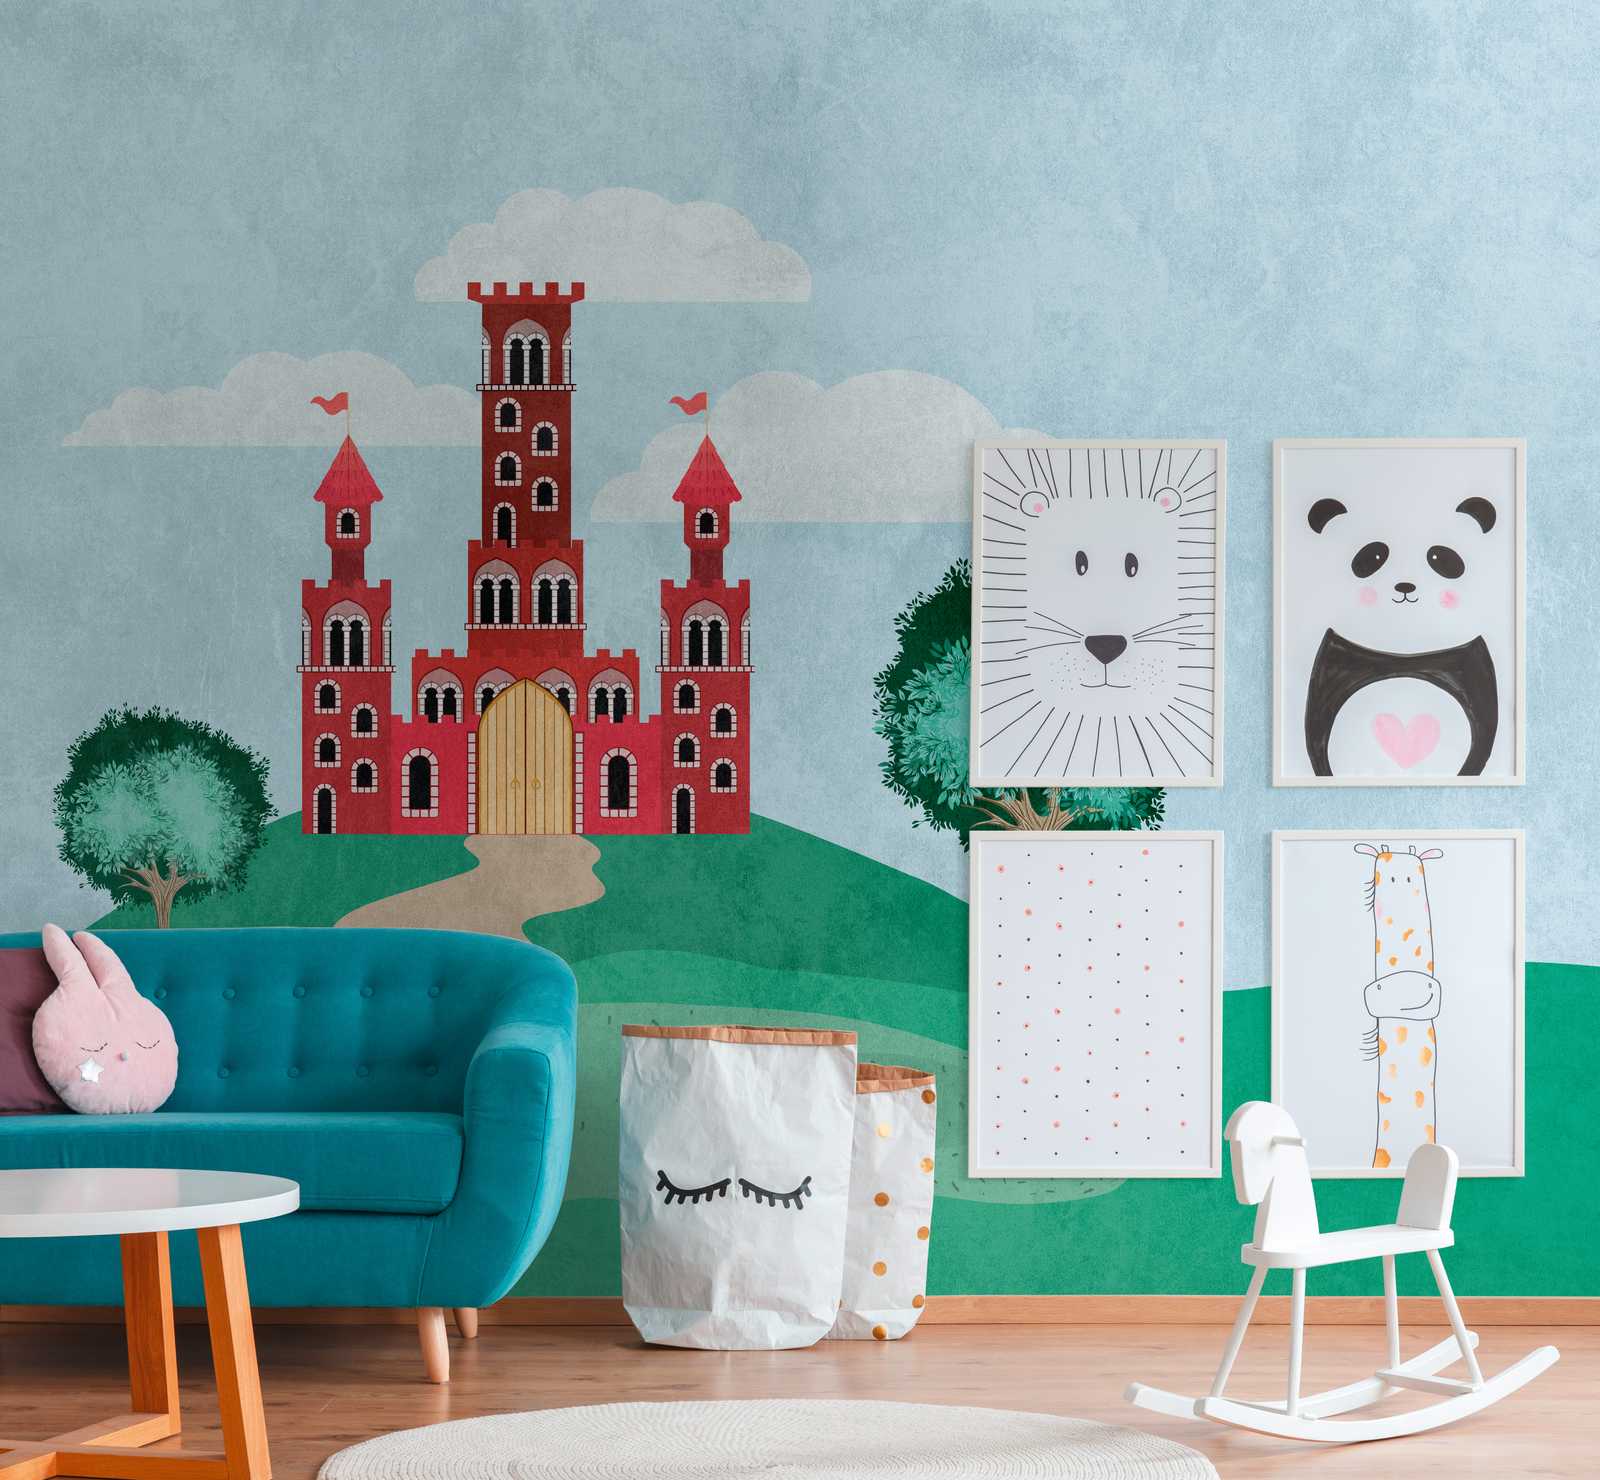             Wallpaper novelty - motif wallpaper fairy tale castle for the nursery
        